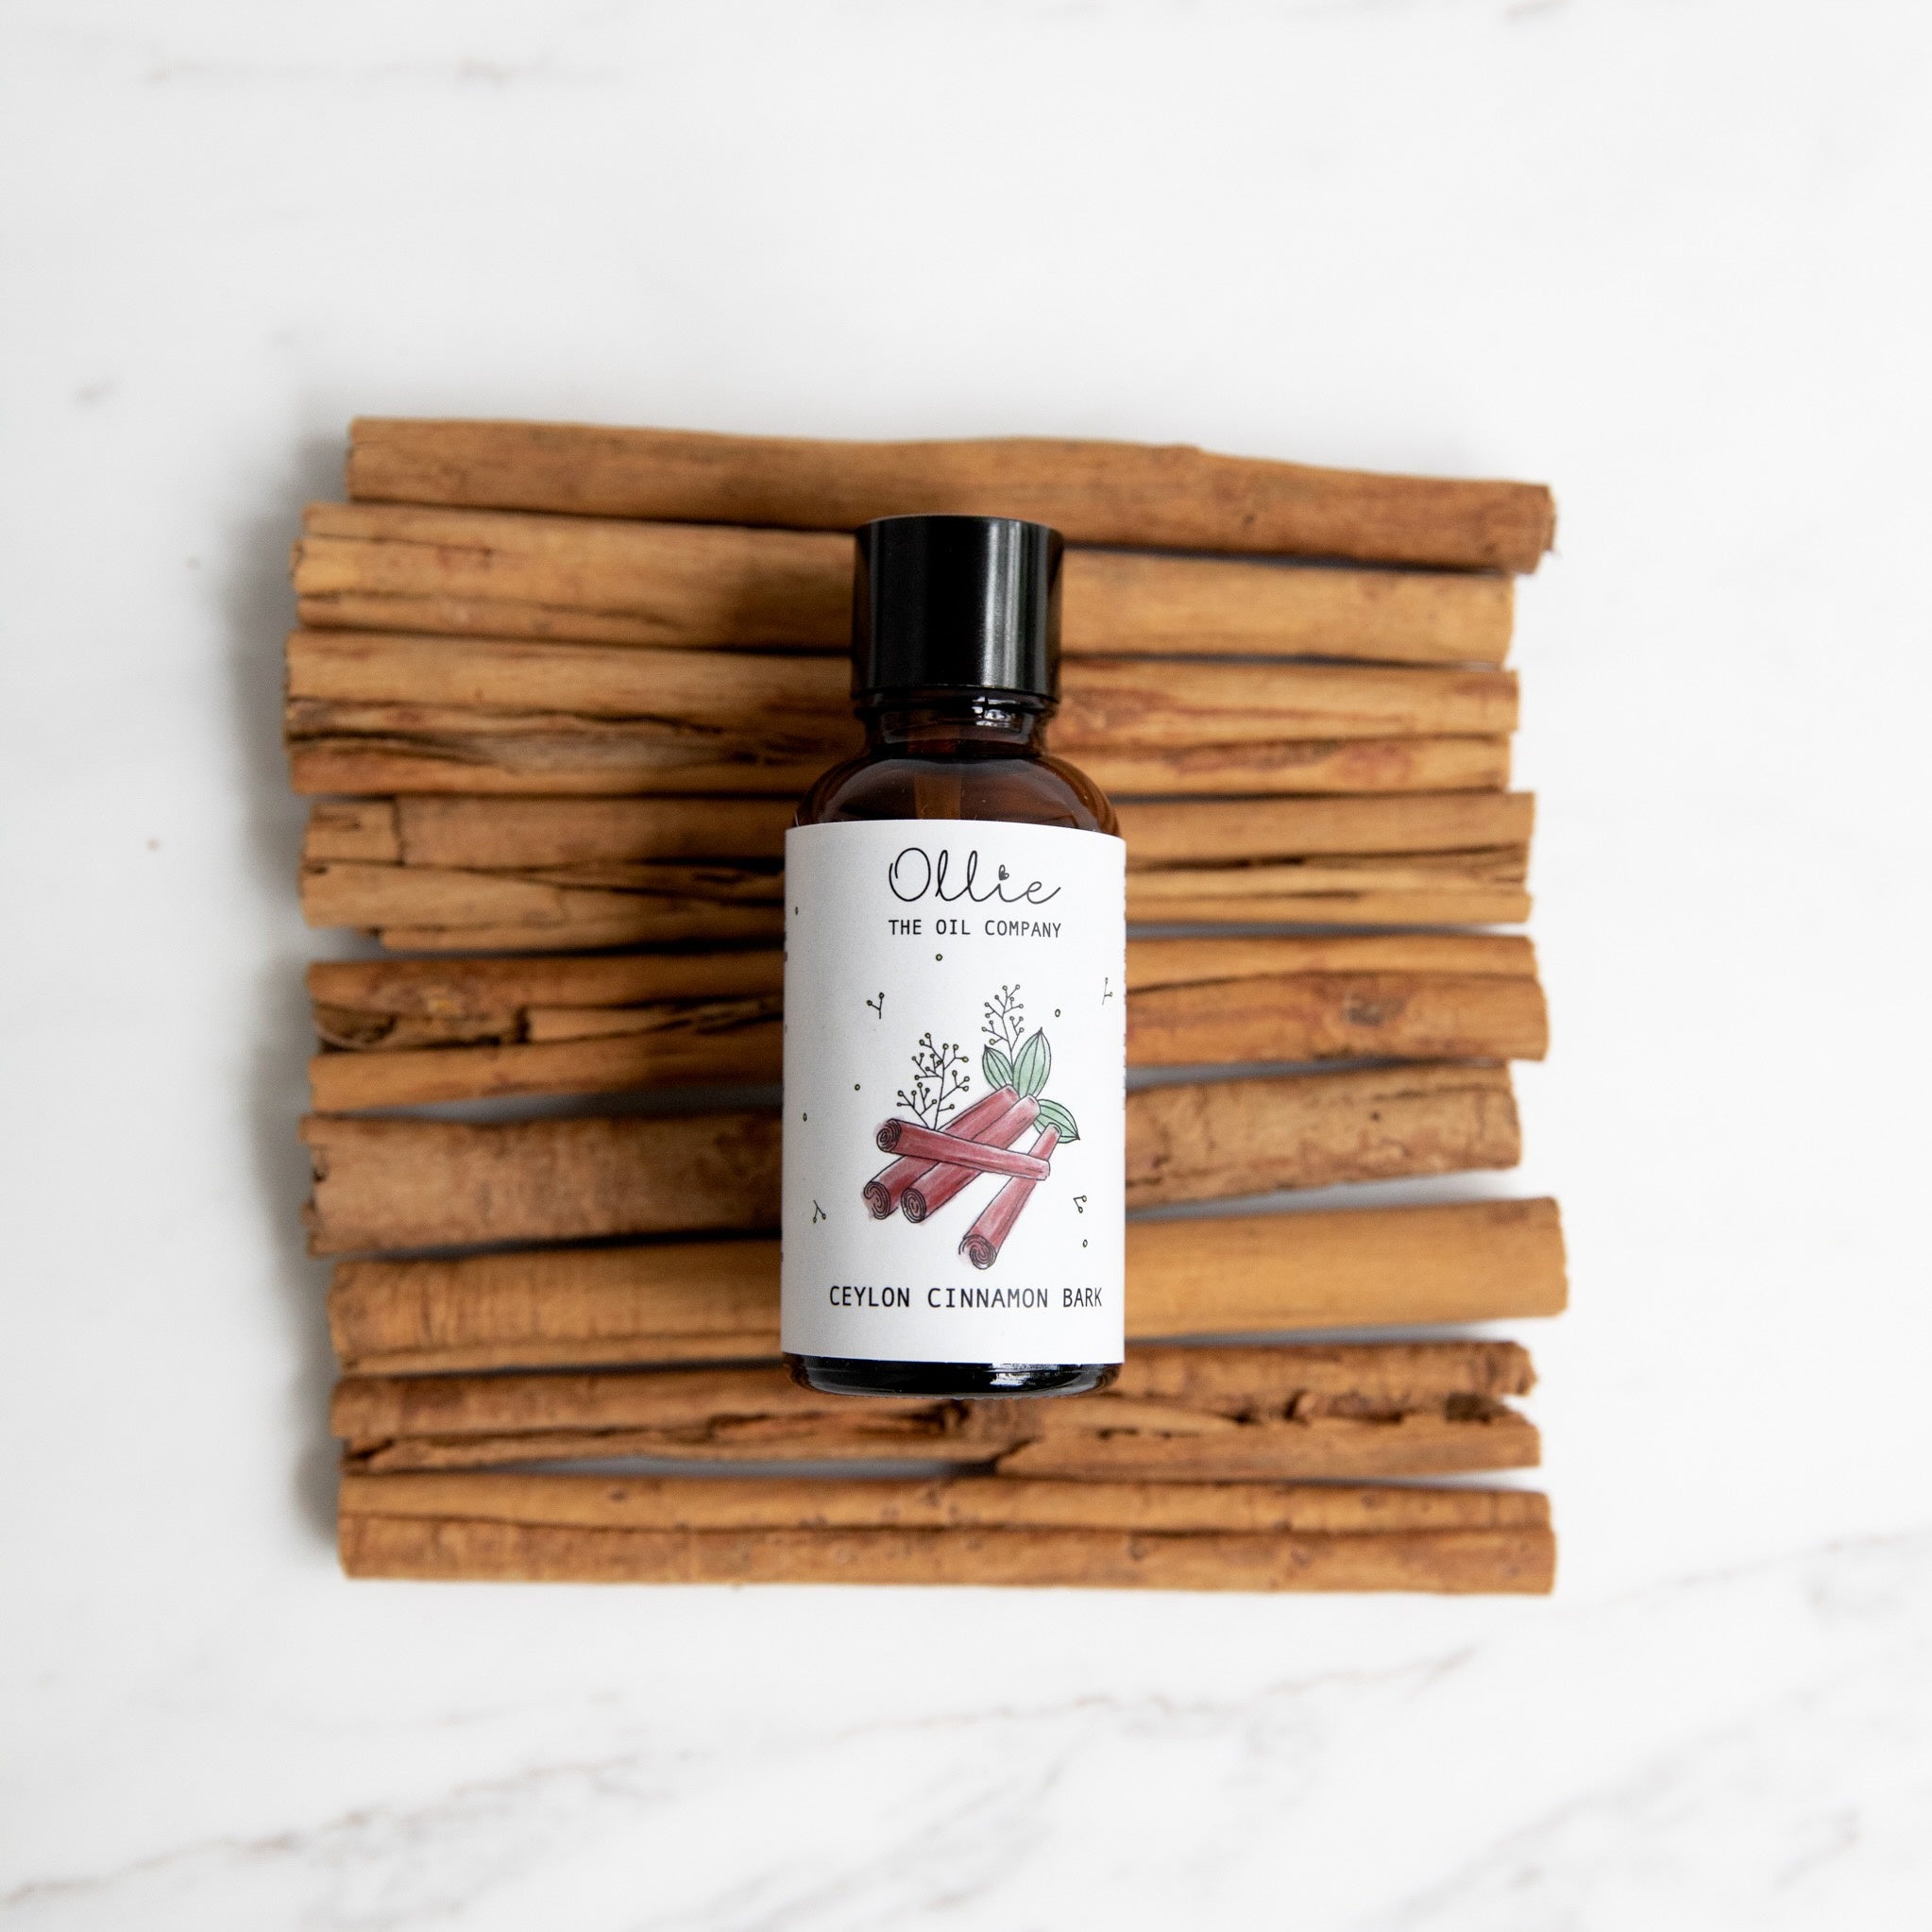 Ollie Ceylon Cinnamon Bark Oil | Skincare Oils | The Green Collective SG